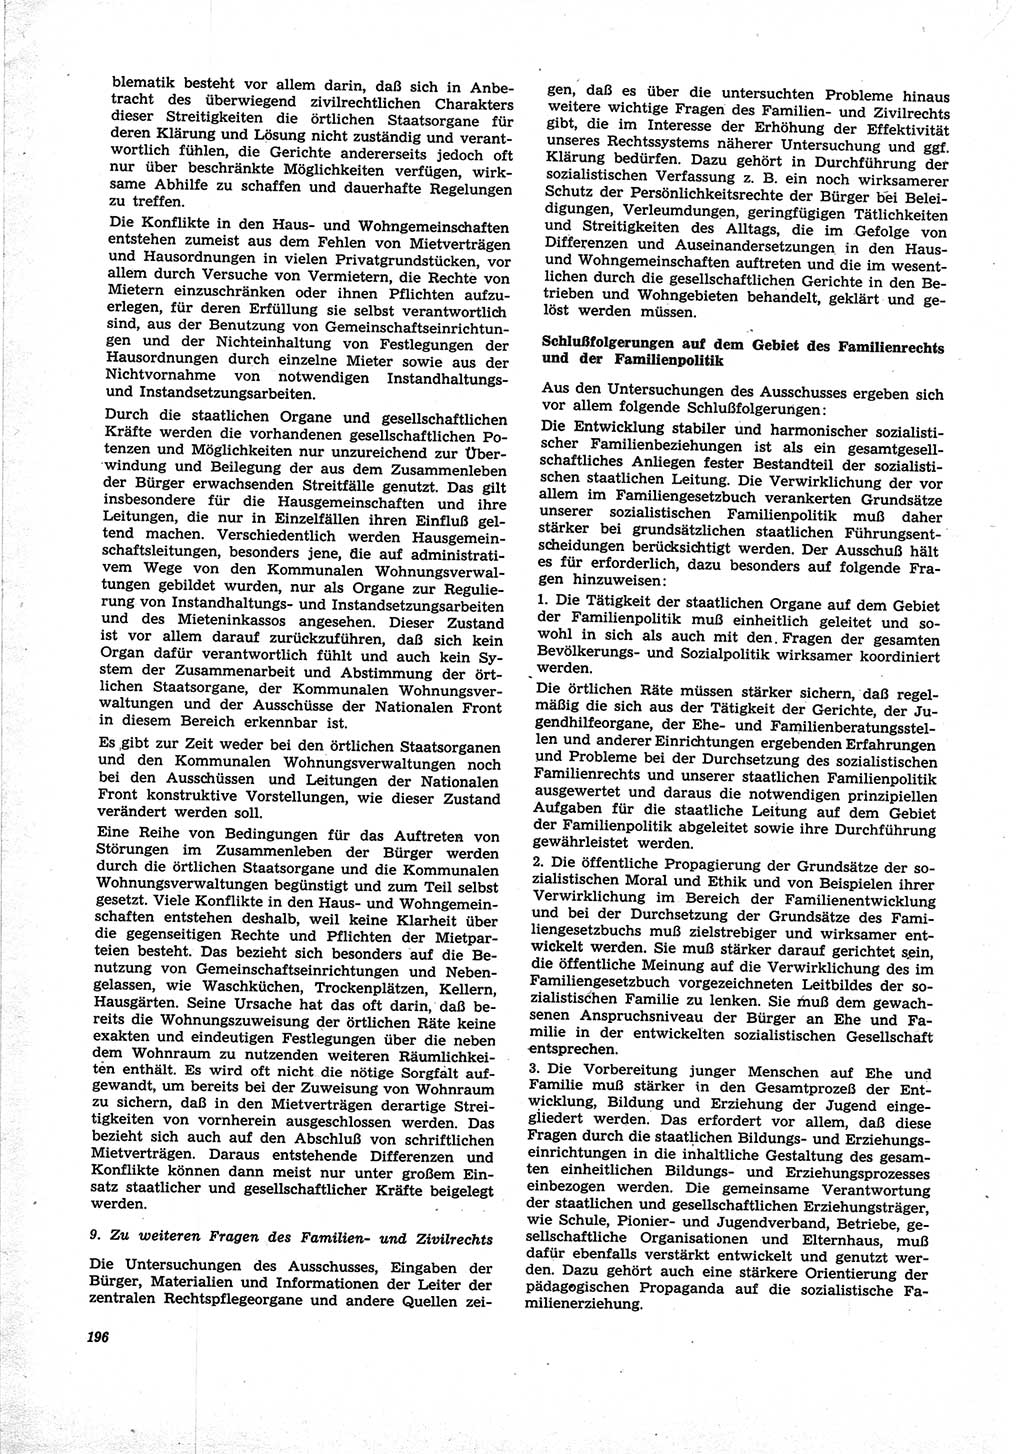 Neue Justiz (NJ), Zeitschrift für Recht und Rechtswissenschaft [Deutsche Demokratische Republik (DDR)], 25. Jahrgang 1971, Seite 196 (NJ DDR 1971, S. 196)